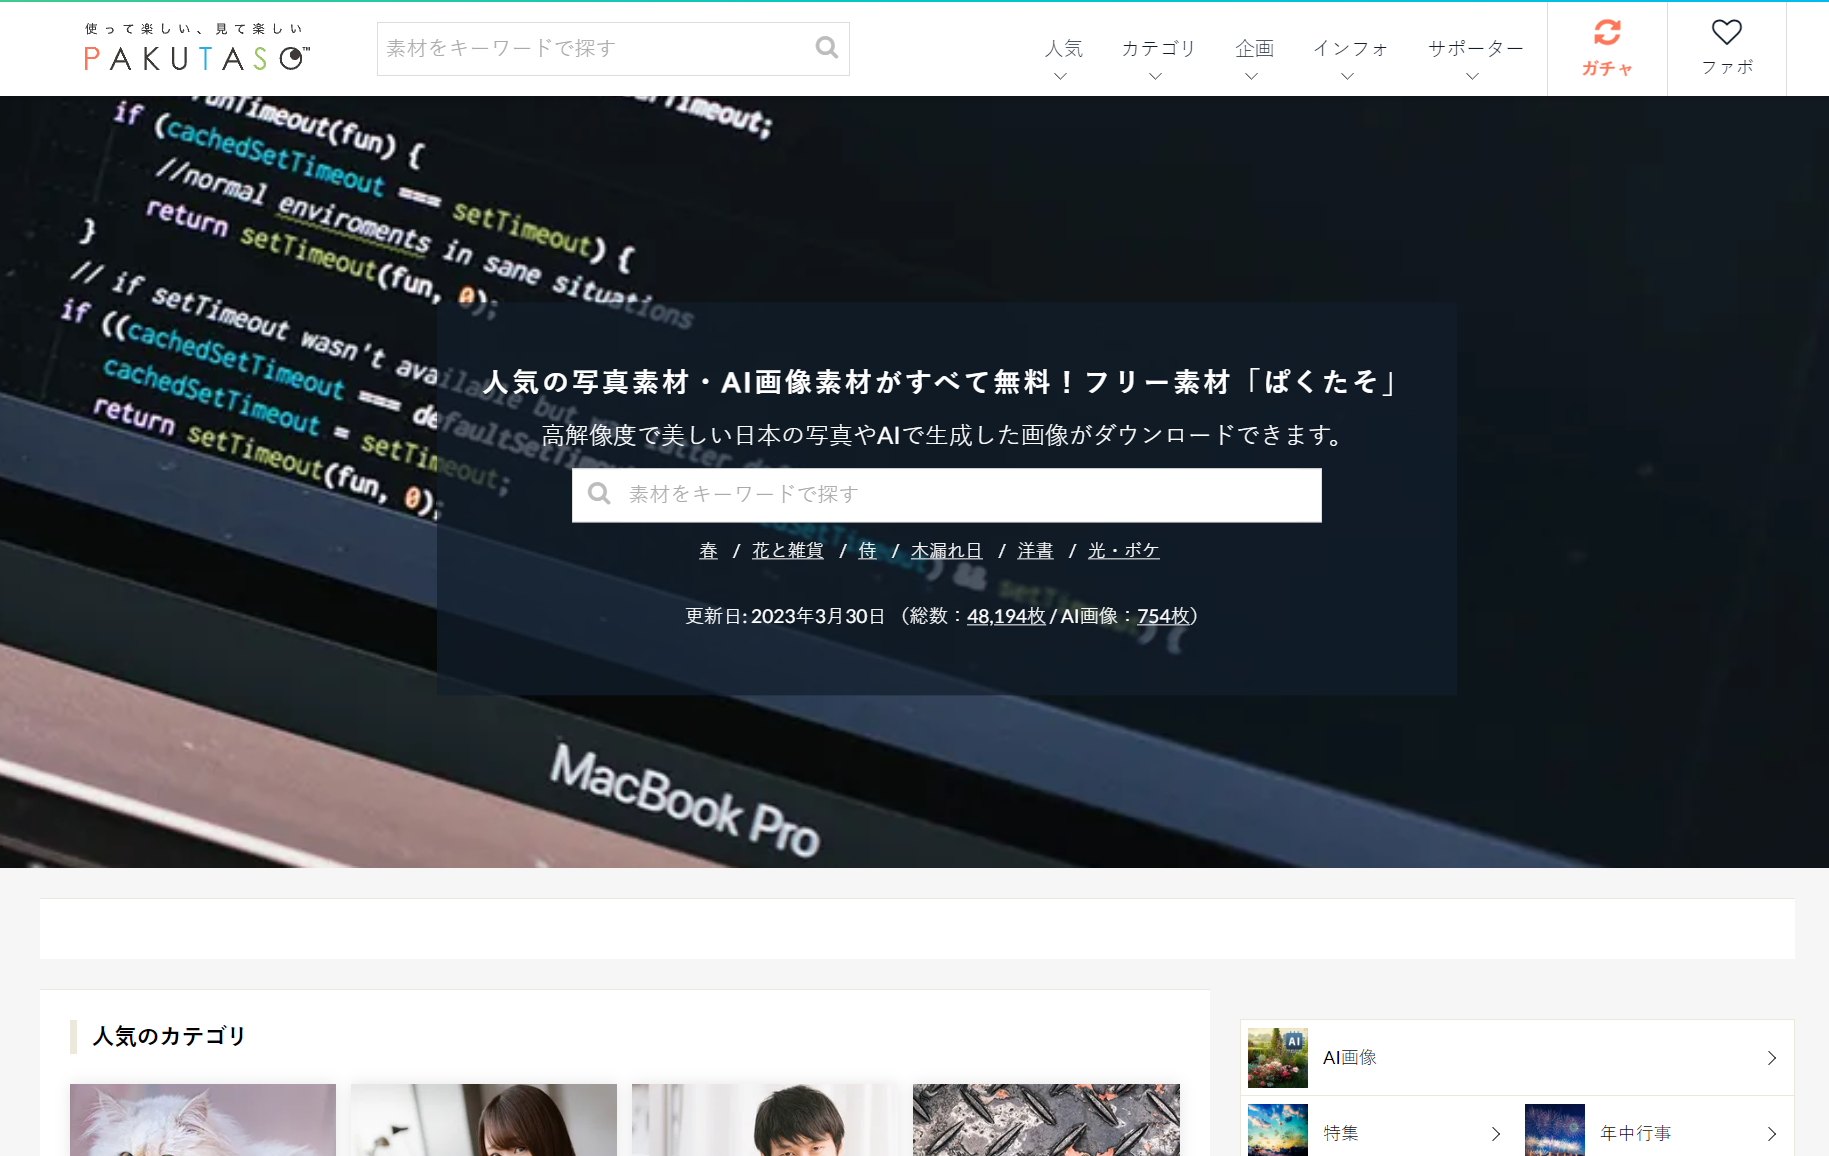 Pakutaso 一个提供高质量免费照片资源的日本网站